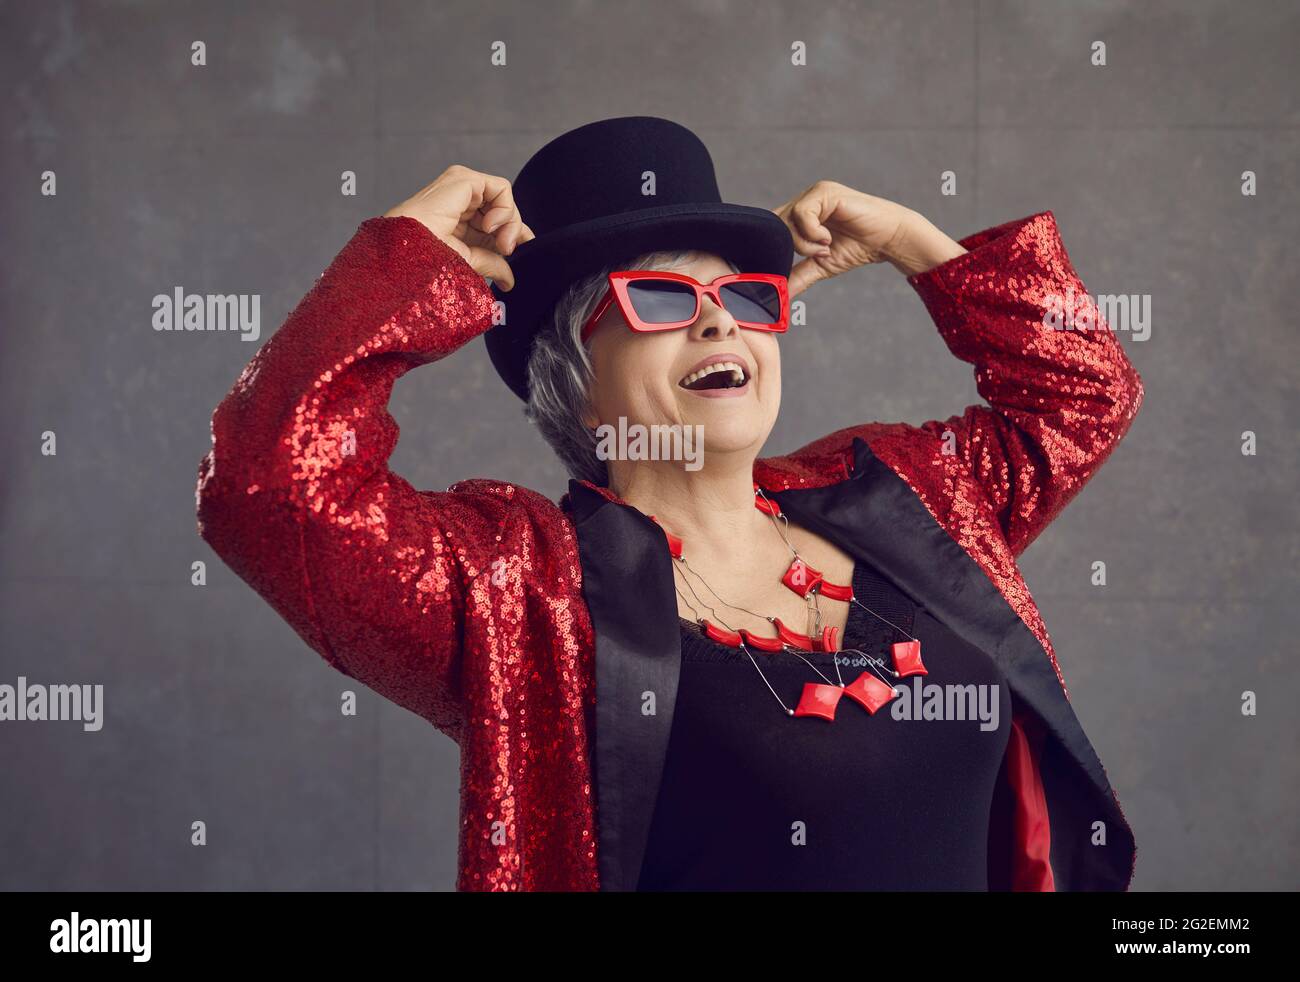 Porträt einer fröhlichen, coolen älteren Frau in einem funkigen Outfit, die sich auf einer Disco-Party amüsieren kann Stockfoto